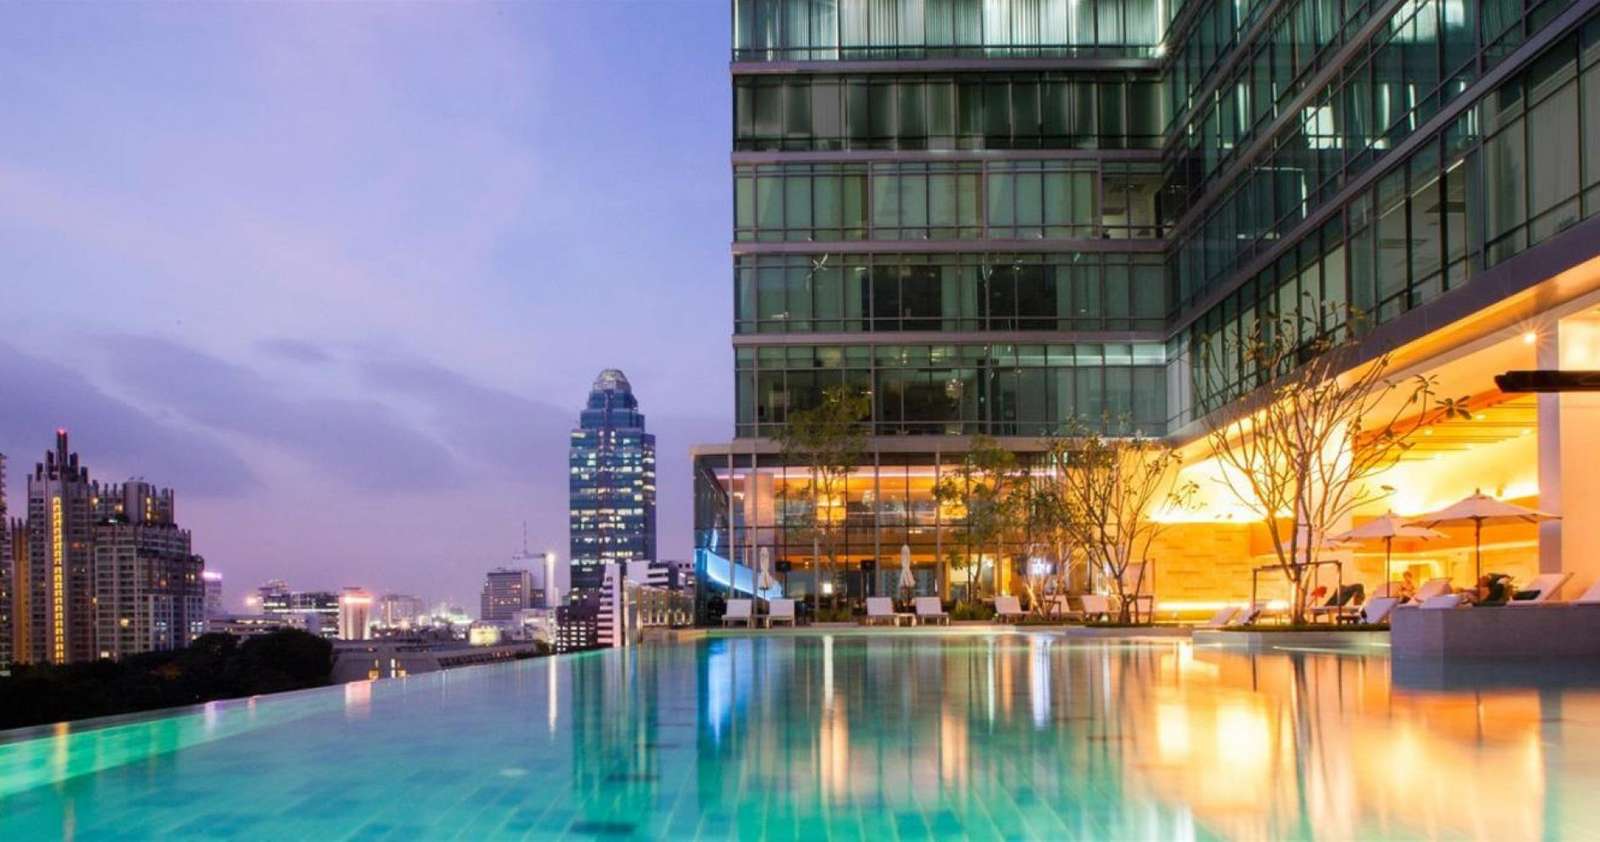 Бассейн в бангкоке. Самый высокий отель в Бангкоке. Таиланд отели Бангкок. Бассейн Люмпини Бангкок. Бангкок бассейн на крыше небоскреба.